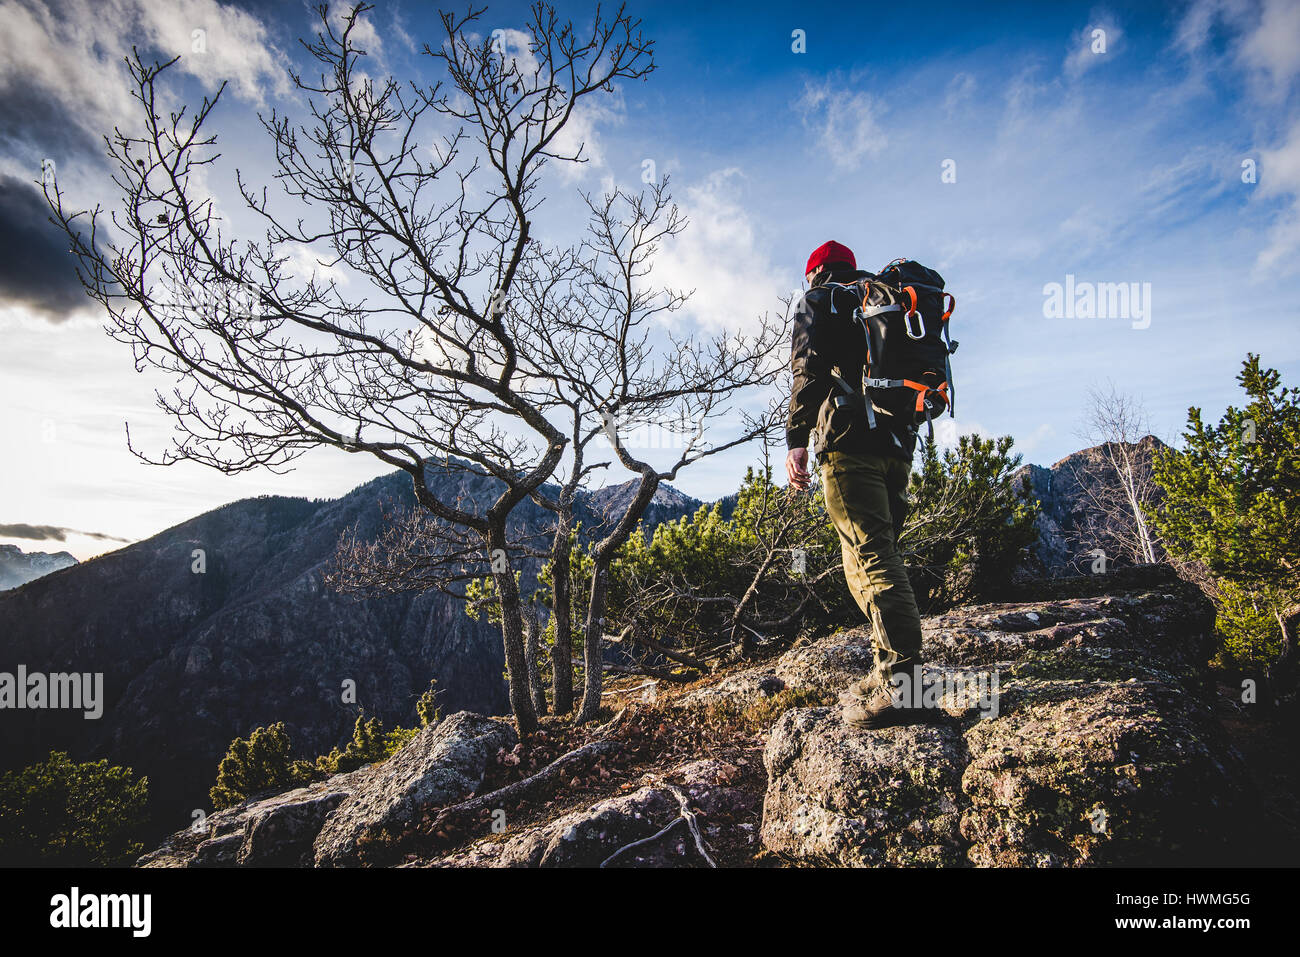 Wanderer zu Fuß auf einem Bergweg in den Wald - Fernweh Reisekonzept mit sportlichen Menschen auf der Exkursion in der wilden Natur - Outdoor-Italienische Alpen Stockfoto